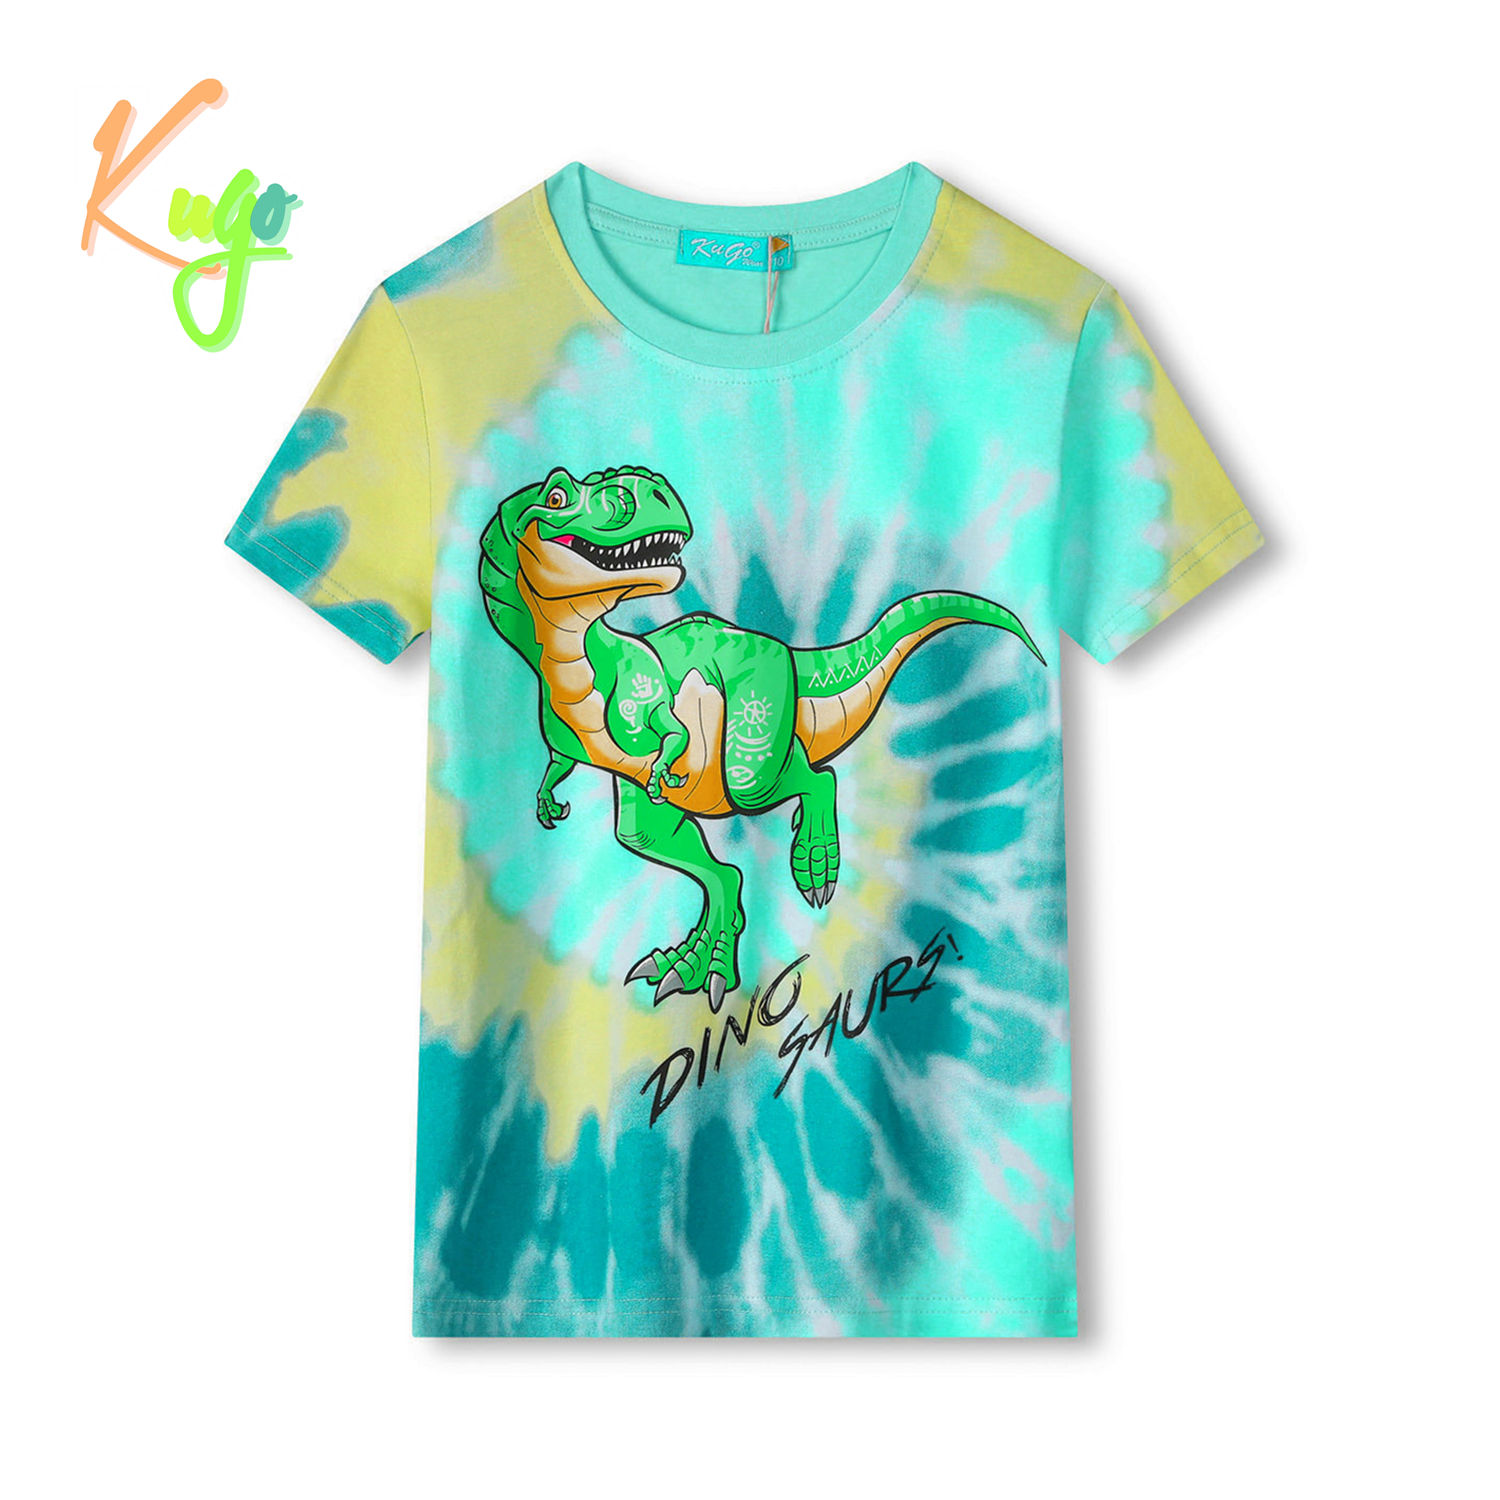 Chlapecké tričko - KUGO FC0301, tyrkysová / oranžový dinosaurus Barva: Tyrkysová, Velikost: 110